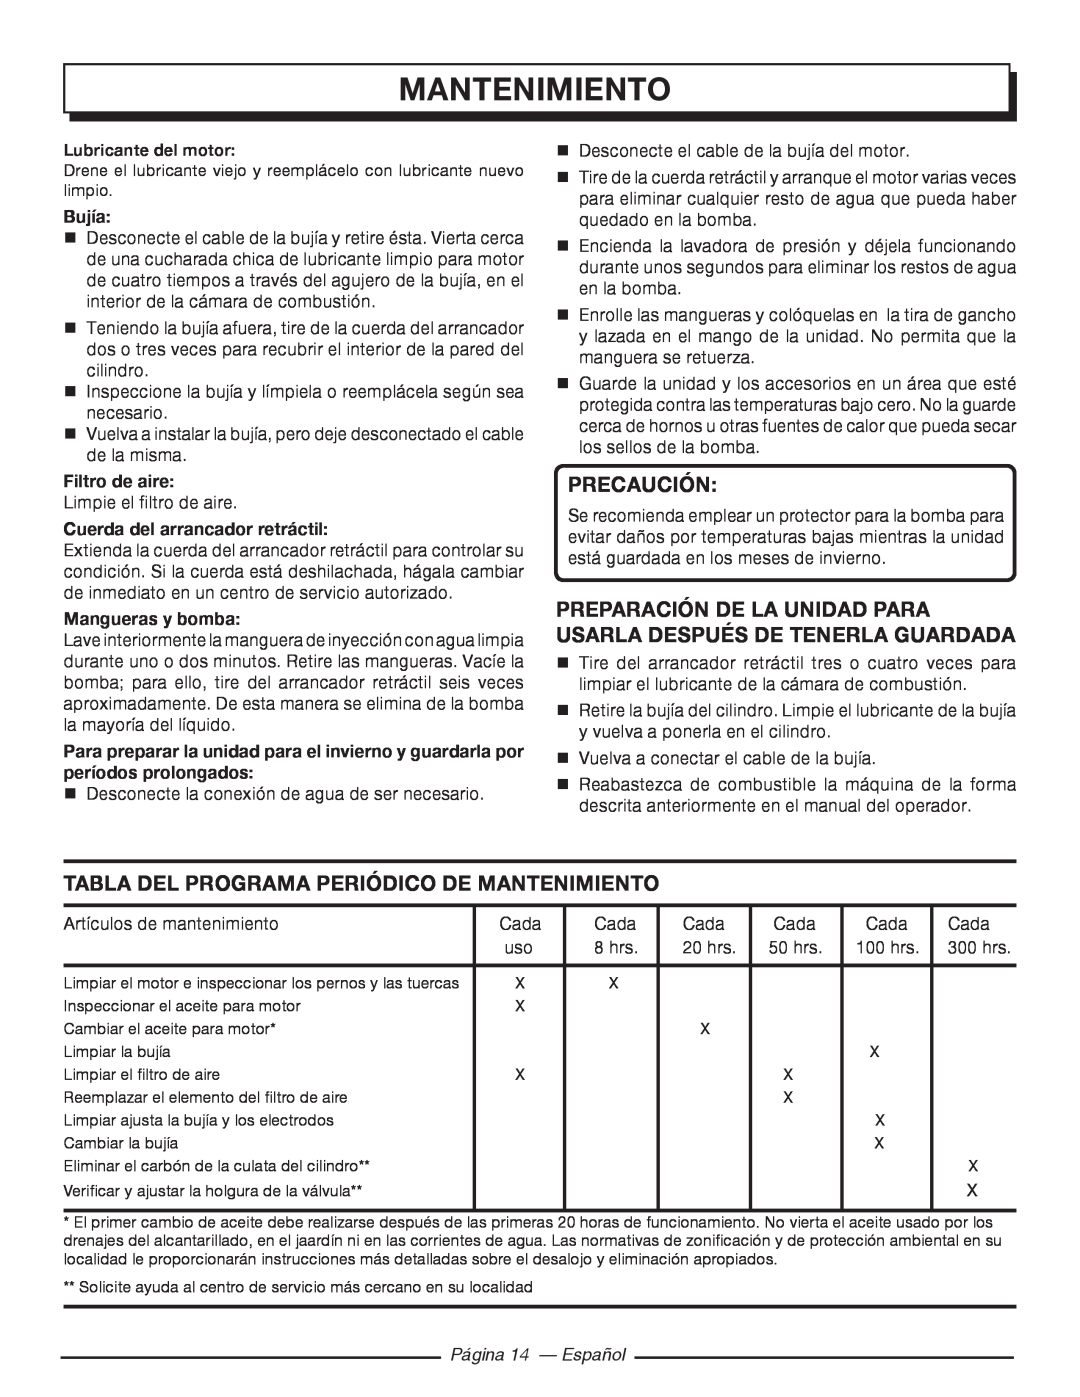 Homelite UT80977, UT80546 manuel dutilisation Tabla Del Programa Periódico De Mantenimiento, Página 14 - Español, Precaución 